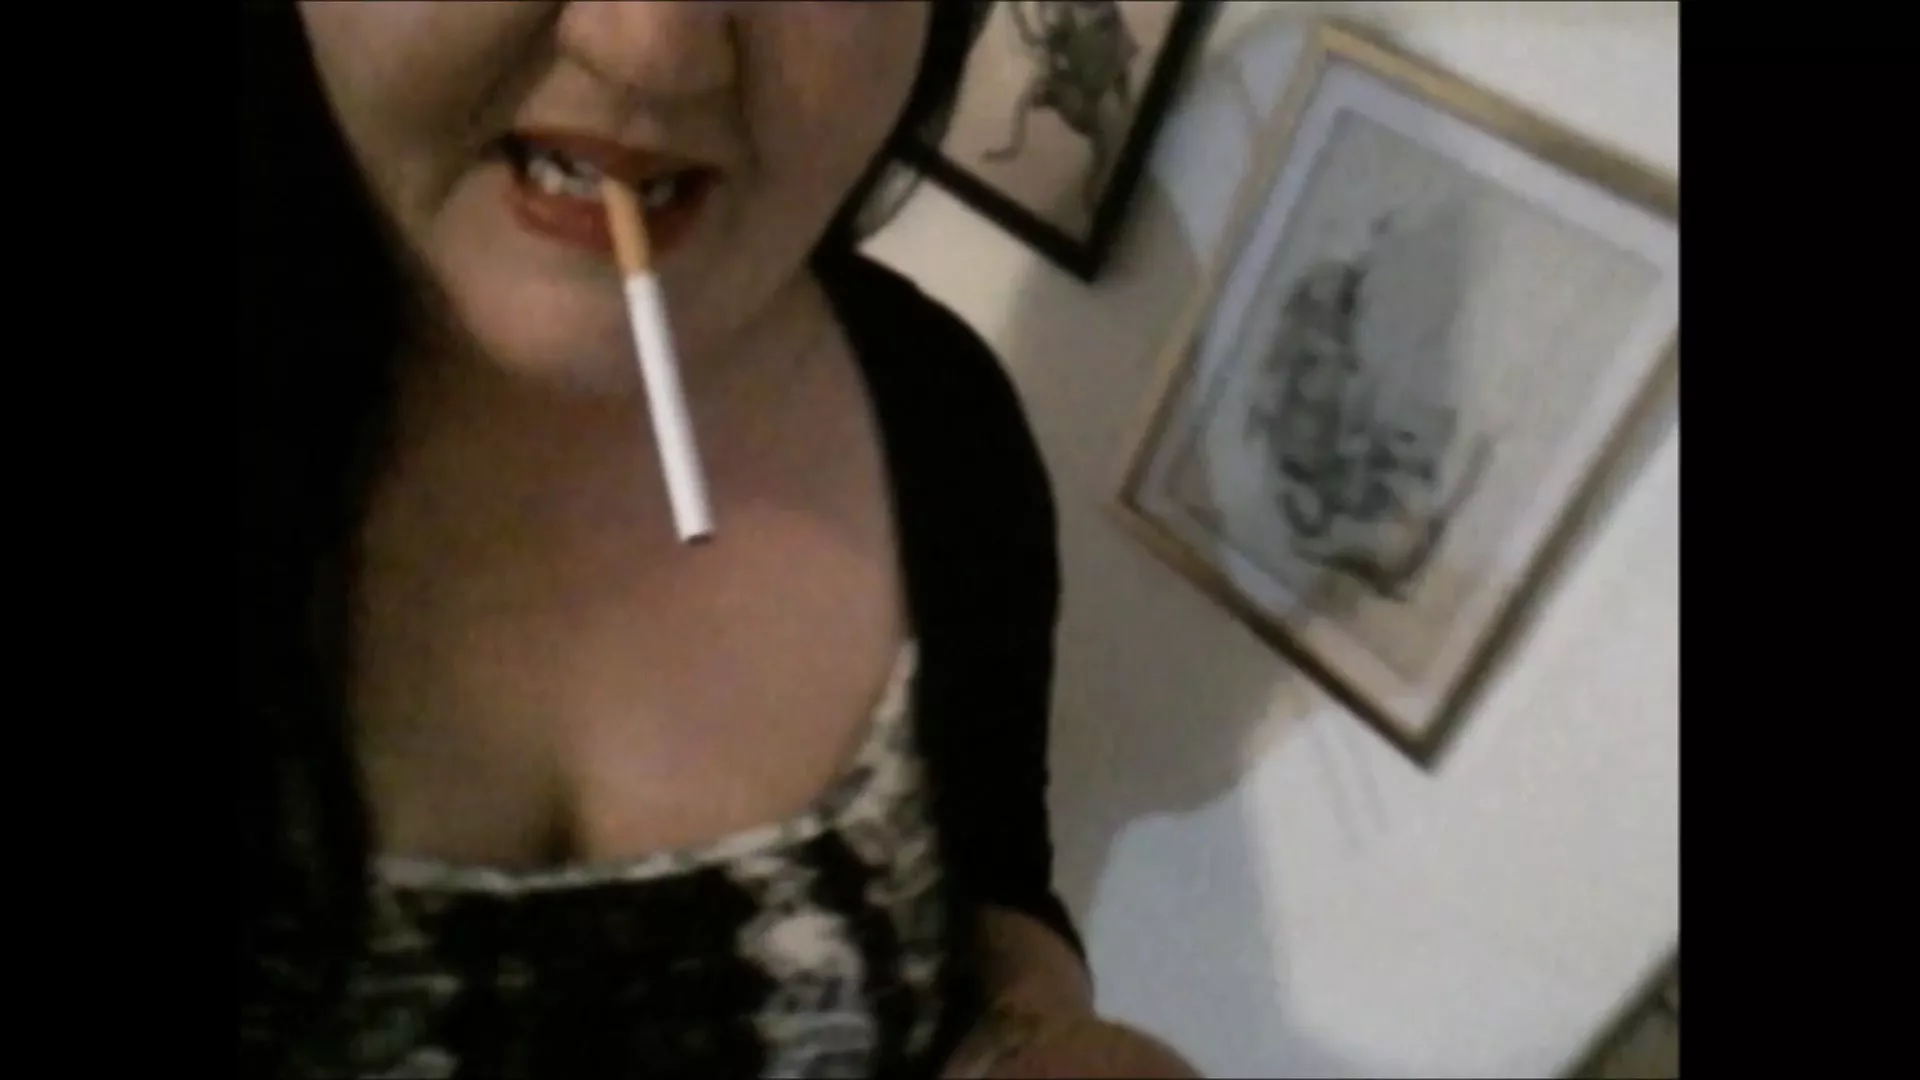 mistress strap on dildo fucking anal slut while smoking